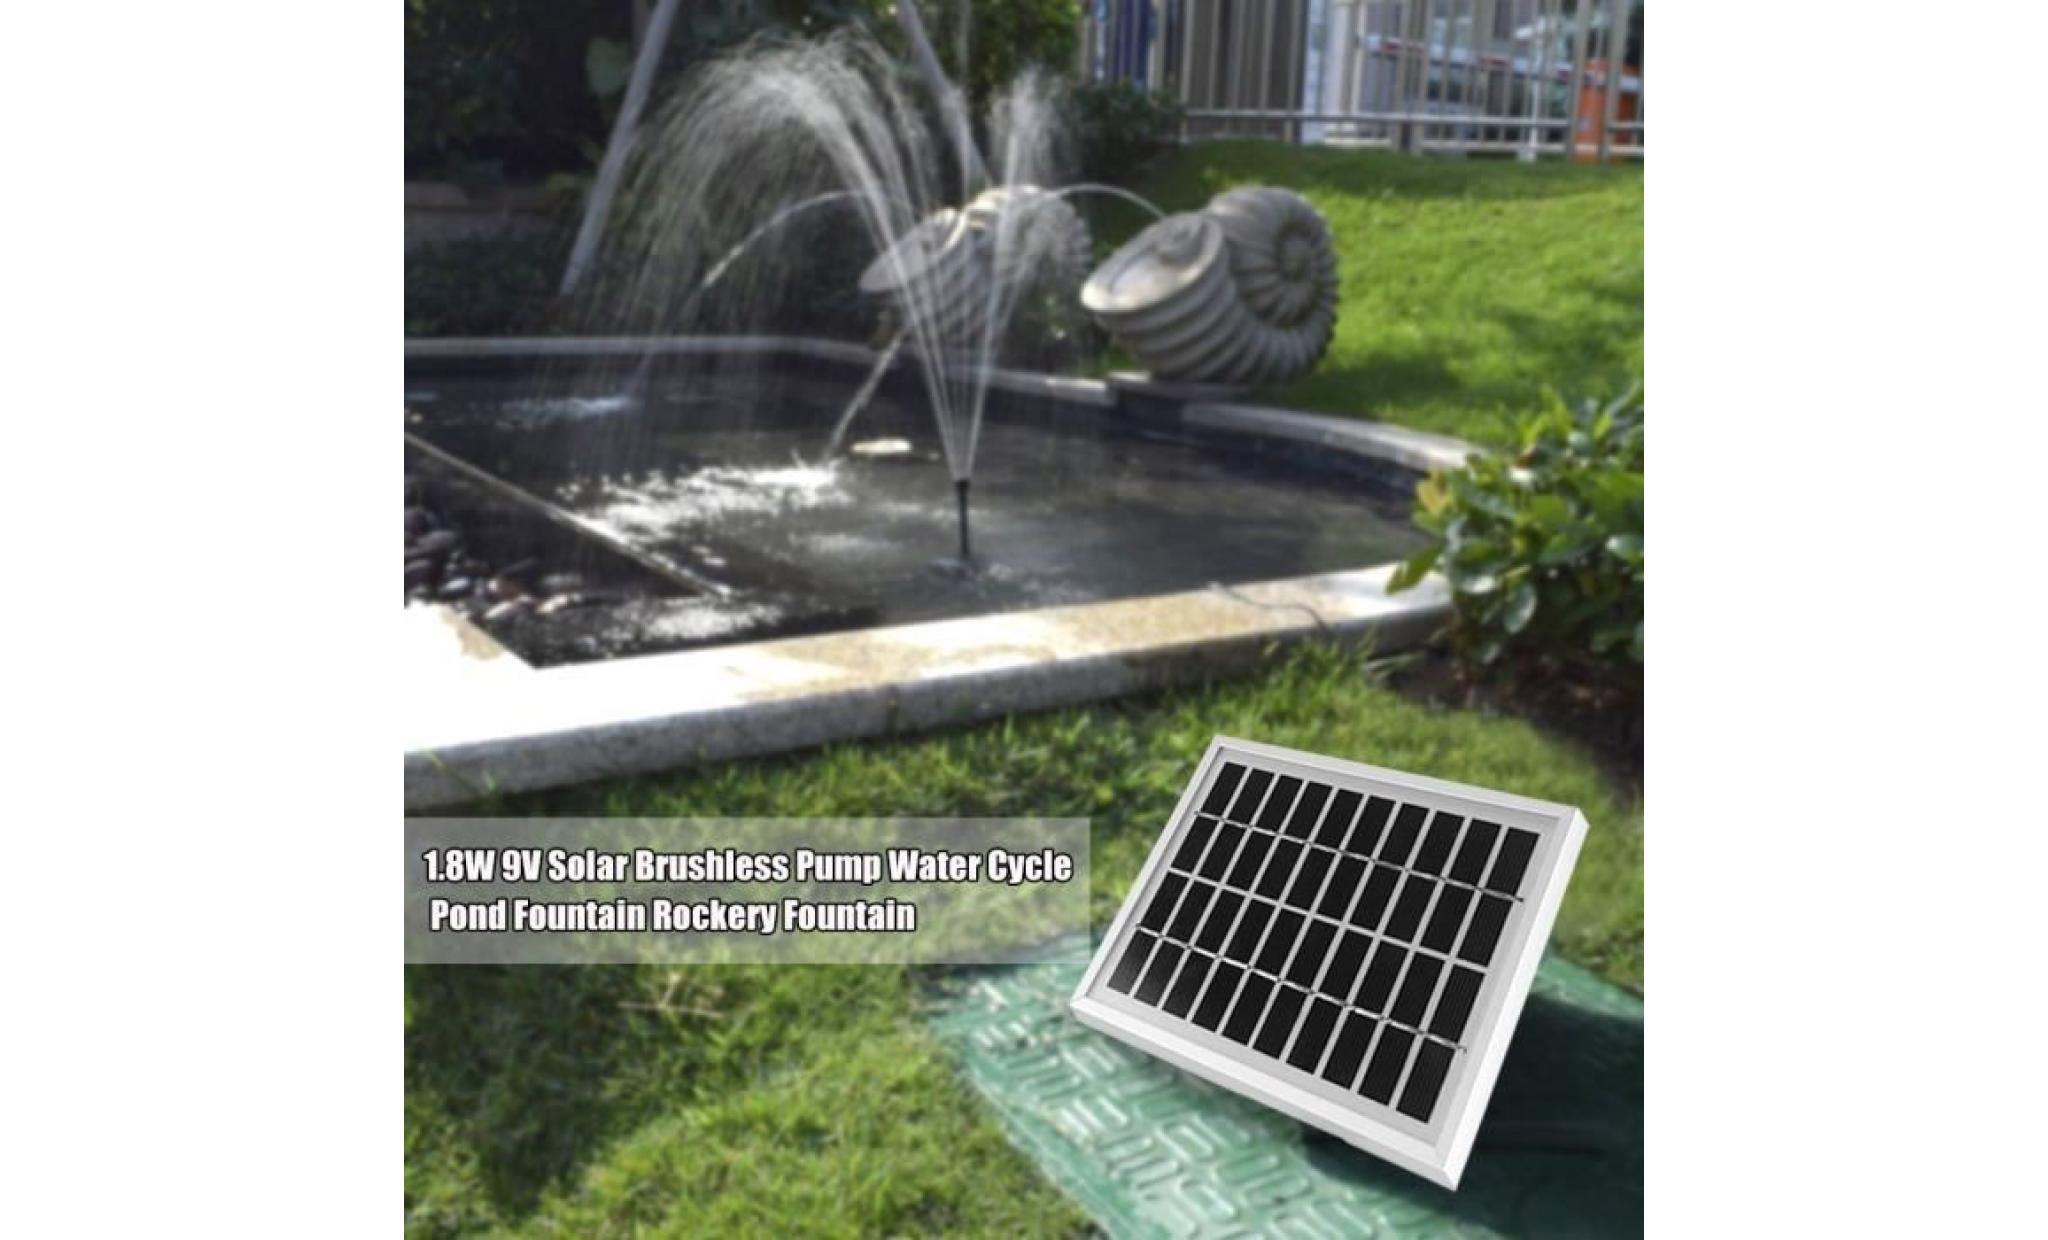 pome à eau de fontaine pompe solaire sans balai 1.8w 9v cycle d'eau fontaine d'étang fontaine de rocaille pas cher